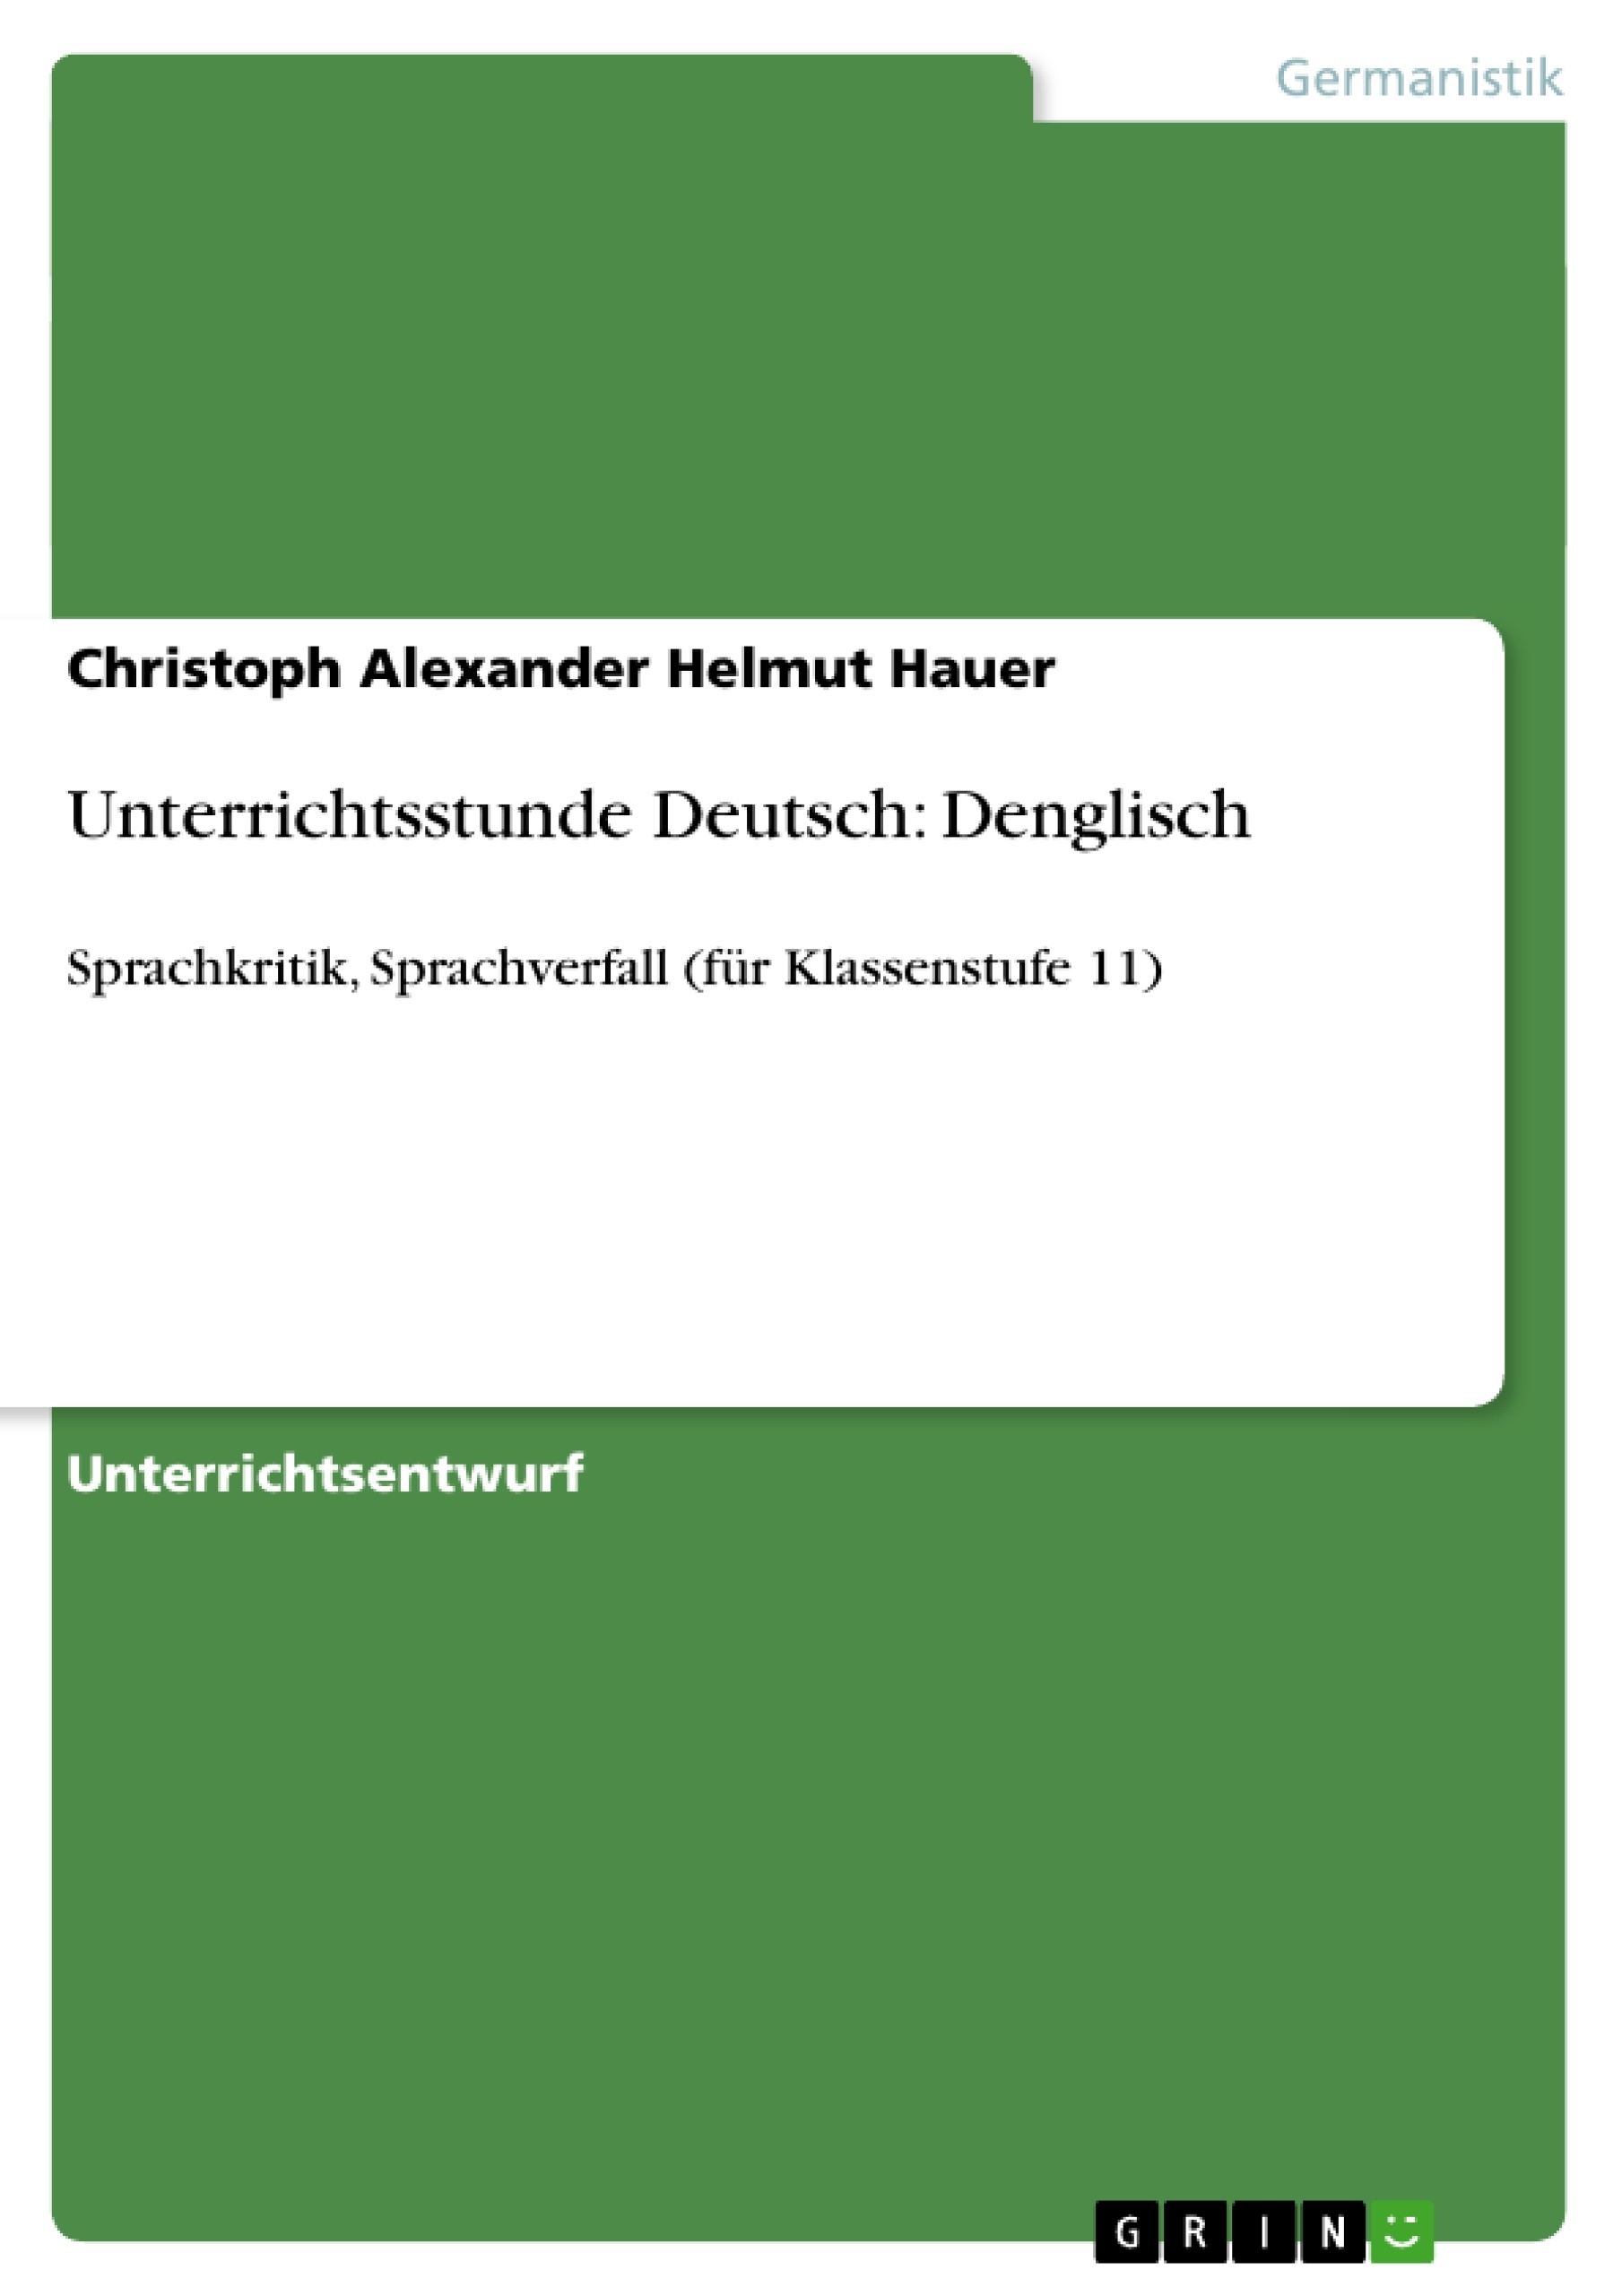 Title: Unterrichtsstunde Deutsch: Denglisch